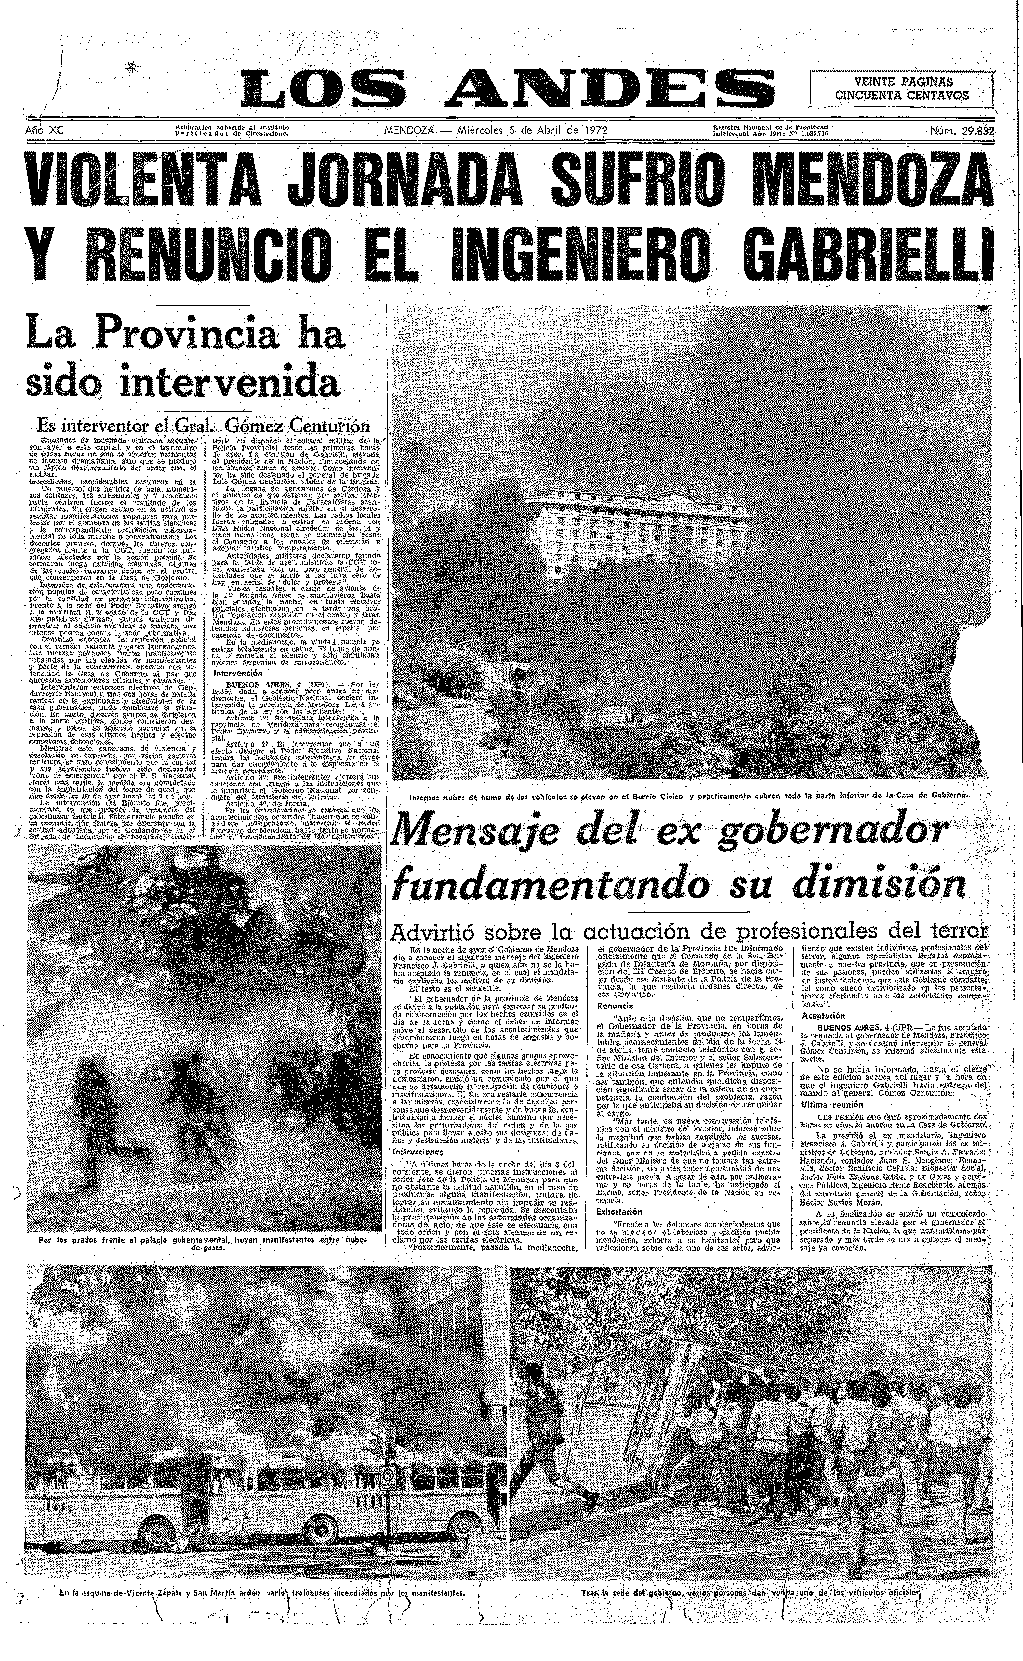 Tapa del diario de 05 de abril de 1972